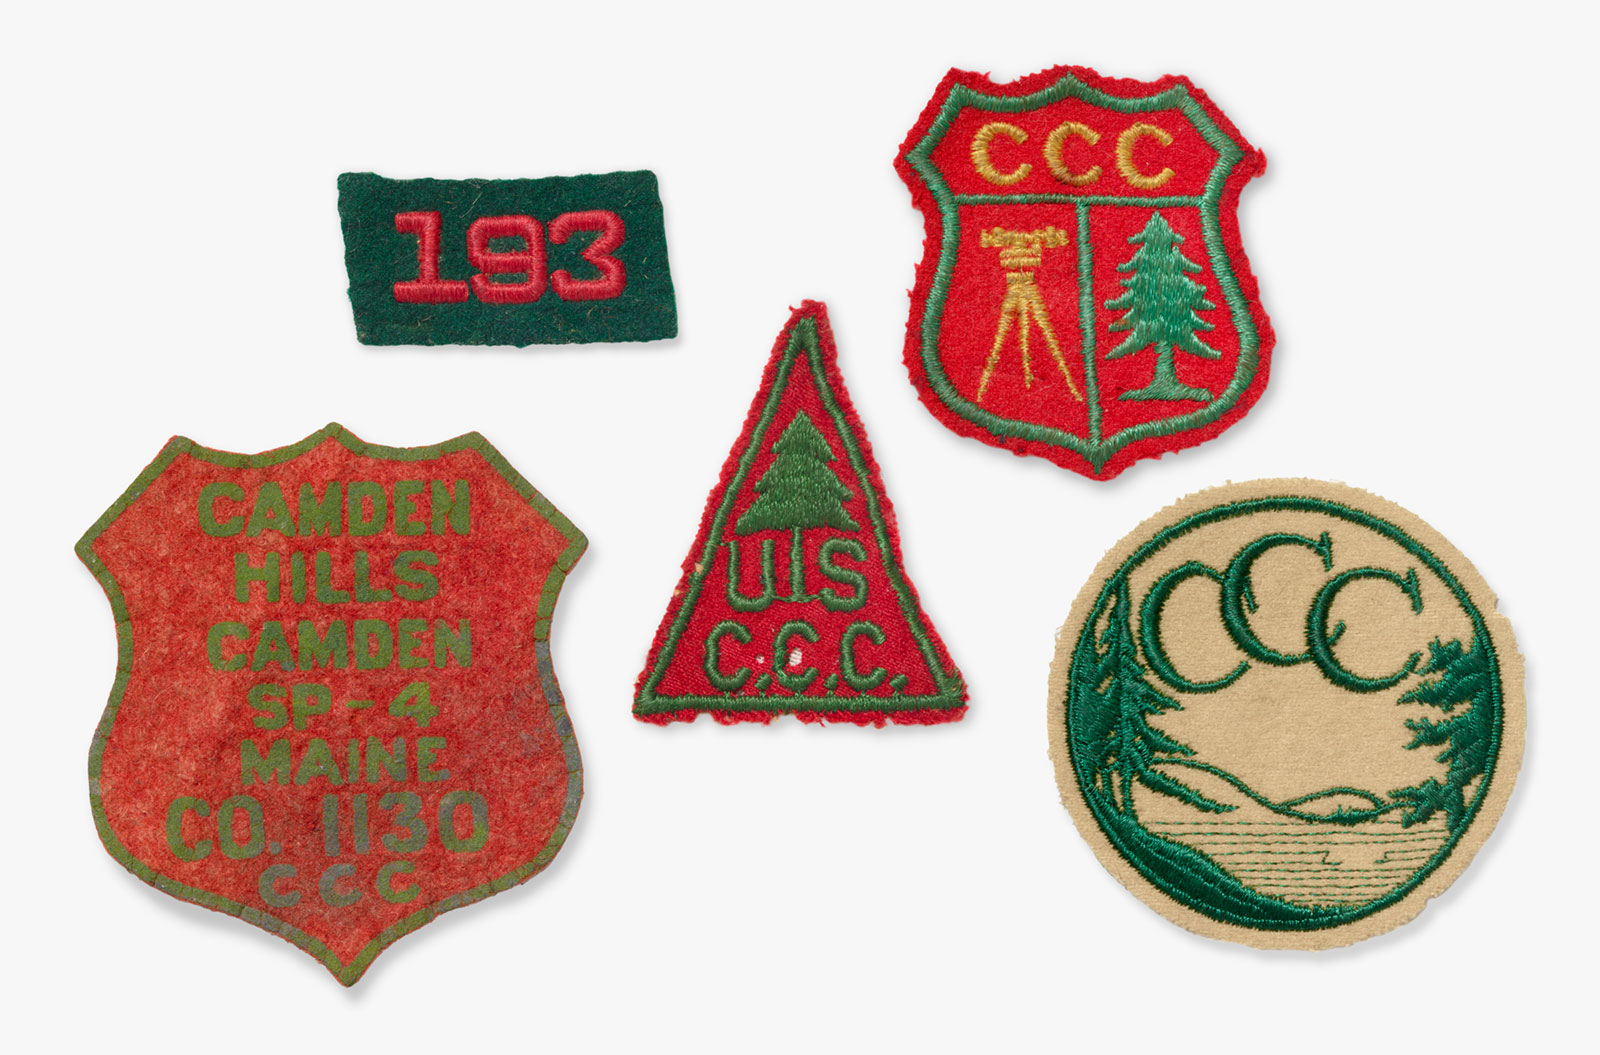 CCC badges